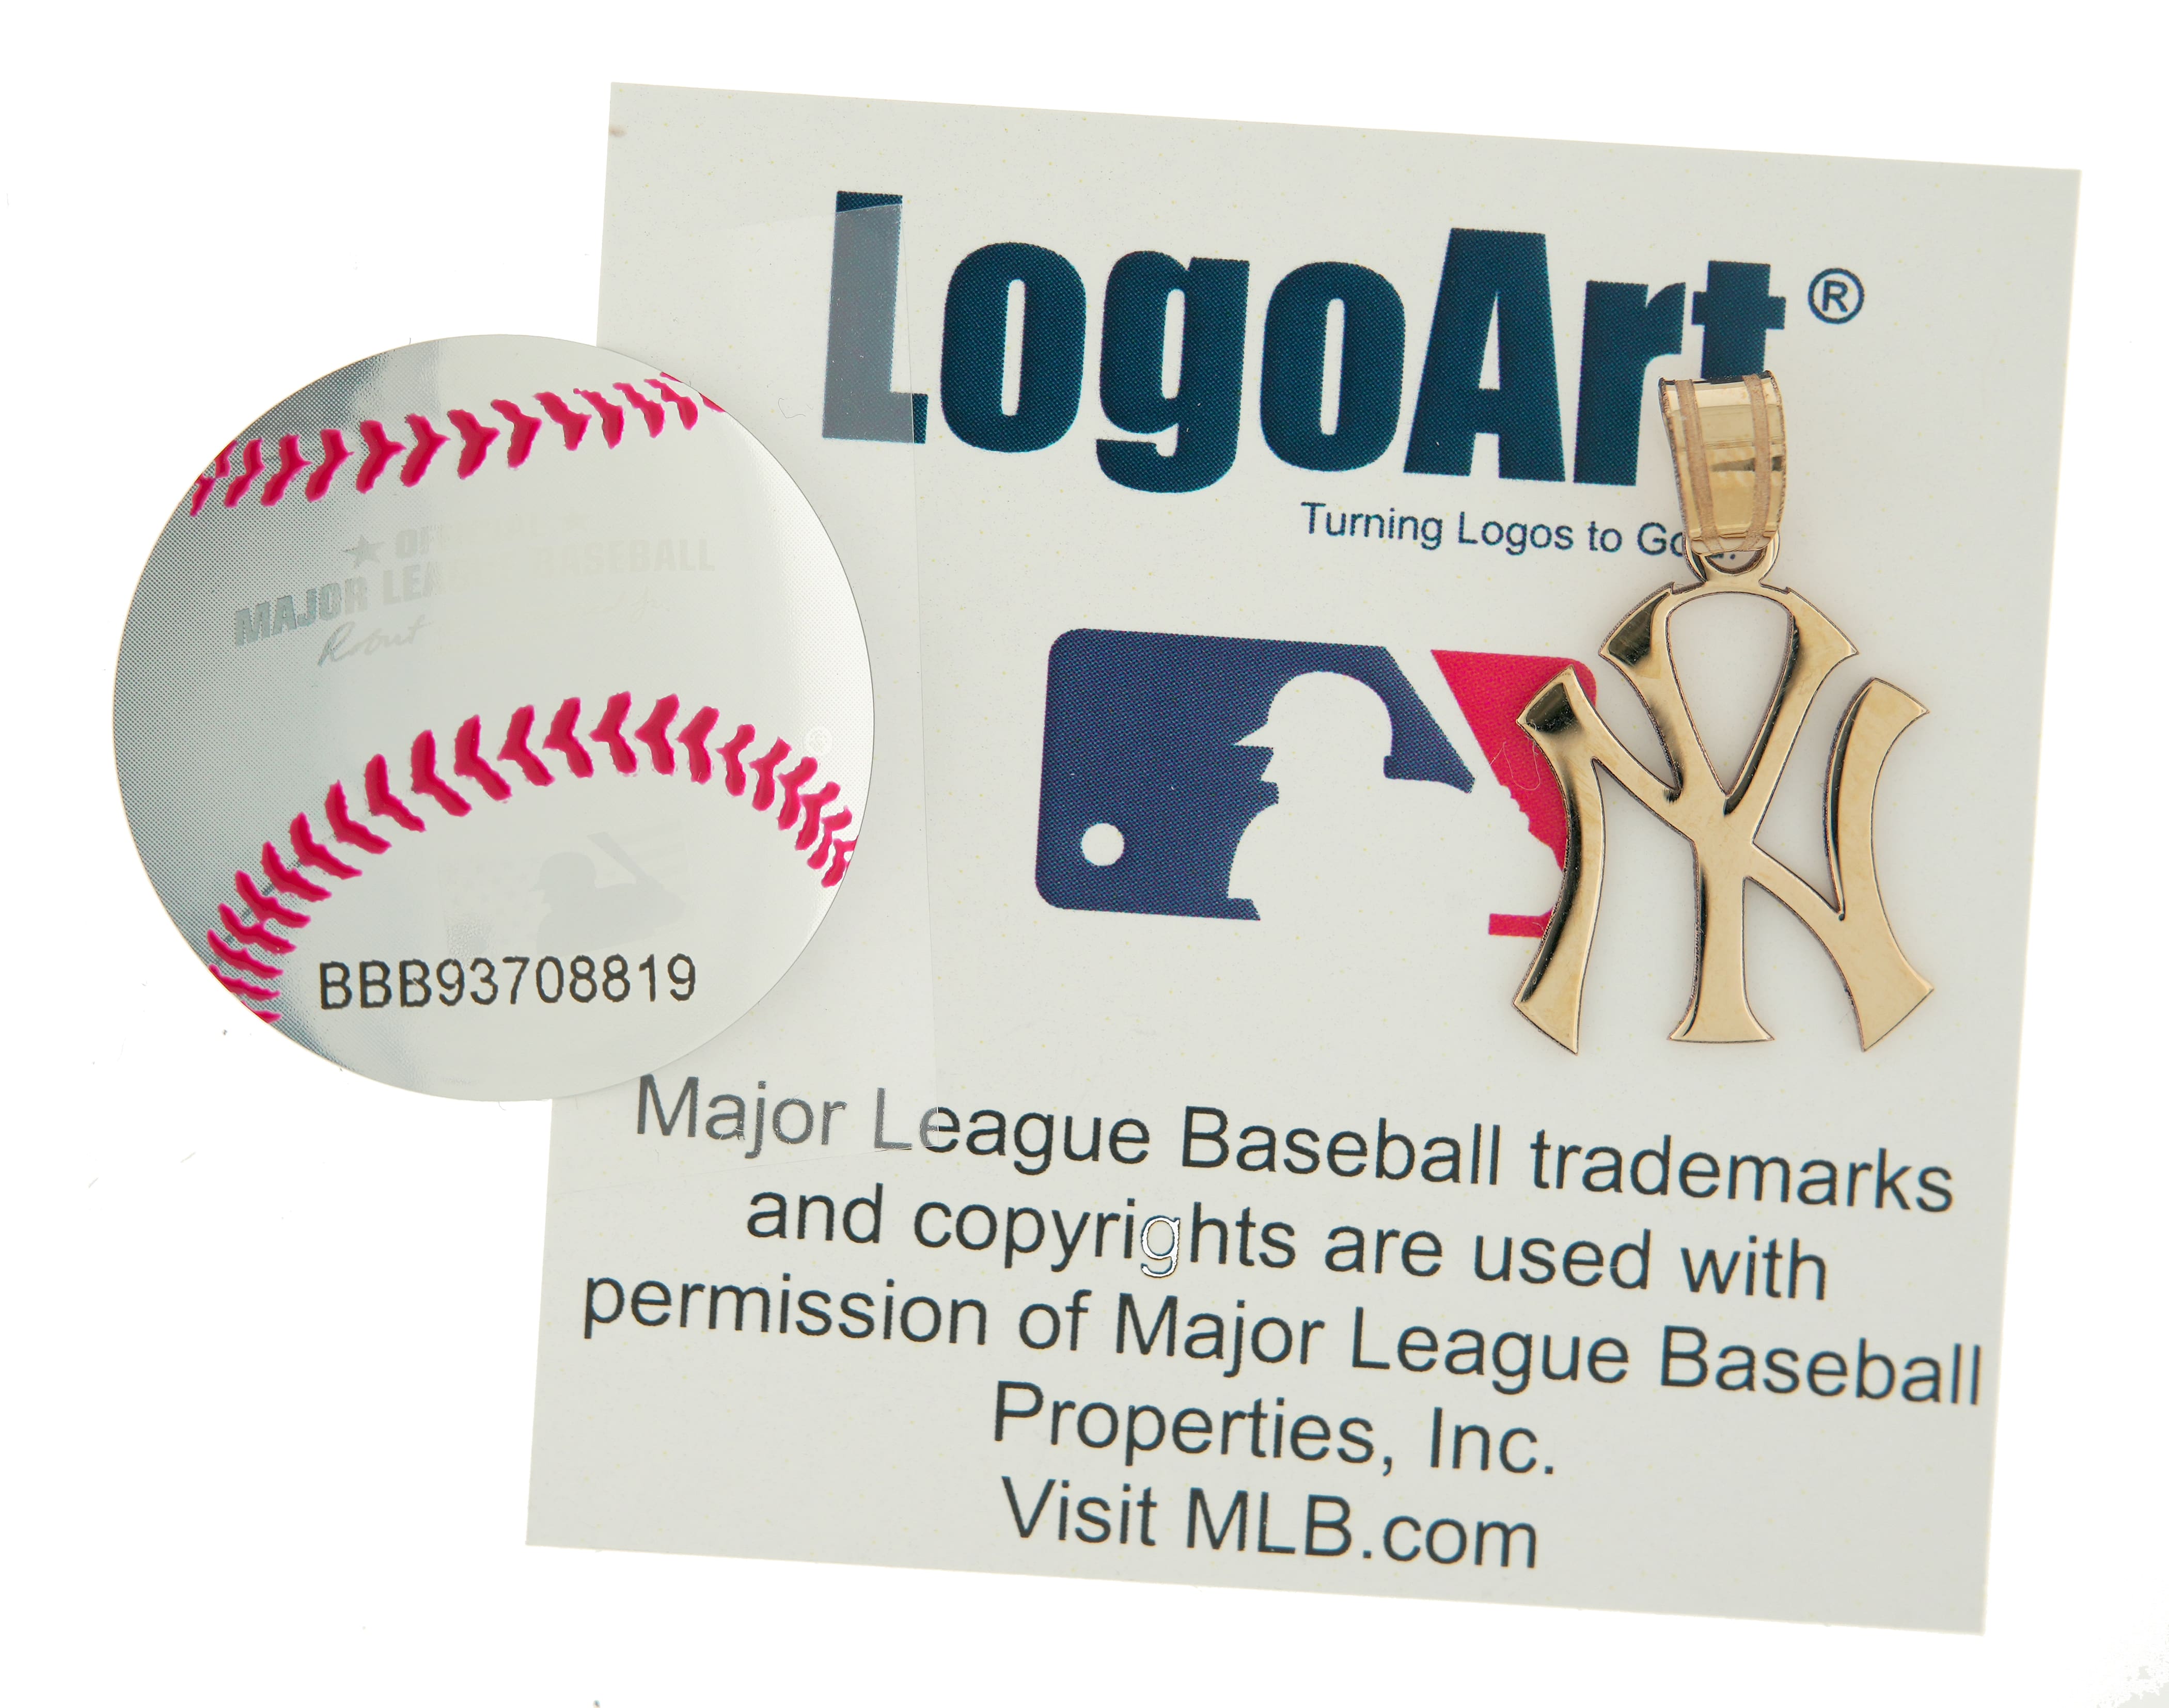 14k 10k Yellow White Gold or Sterling Silver New York Yankees LogoArt Licensed Major League Baseball MLB Pendant Charm